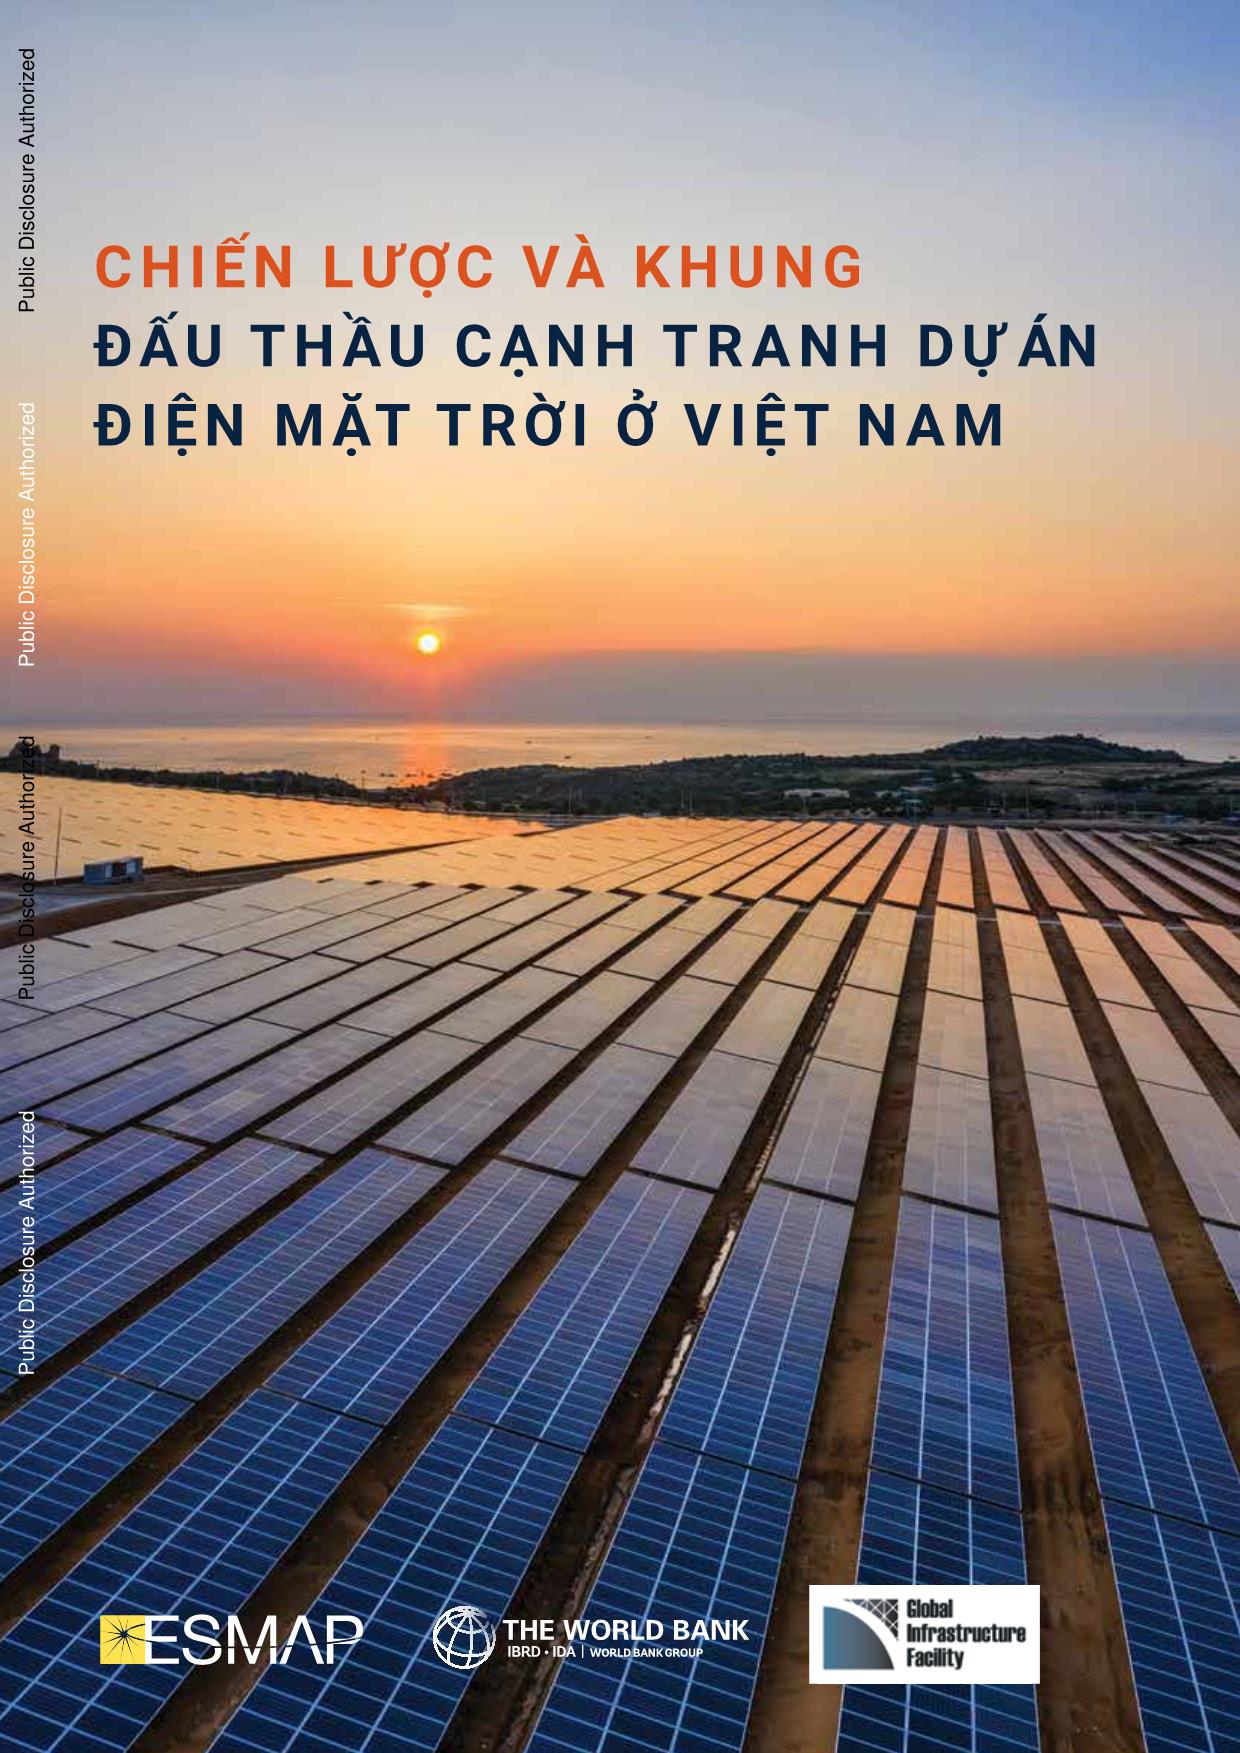 Chiến lược và khung đấu thầu cạnh tranh dự án điện mặt trời ở Việt Nam trang 1